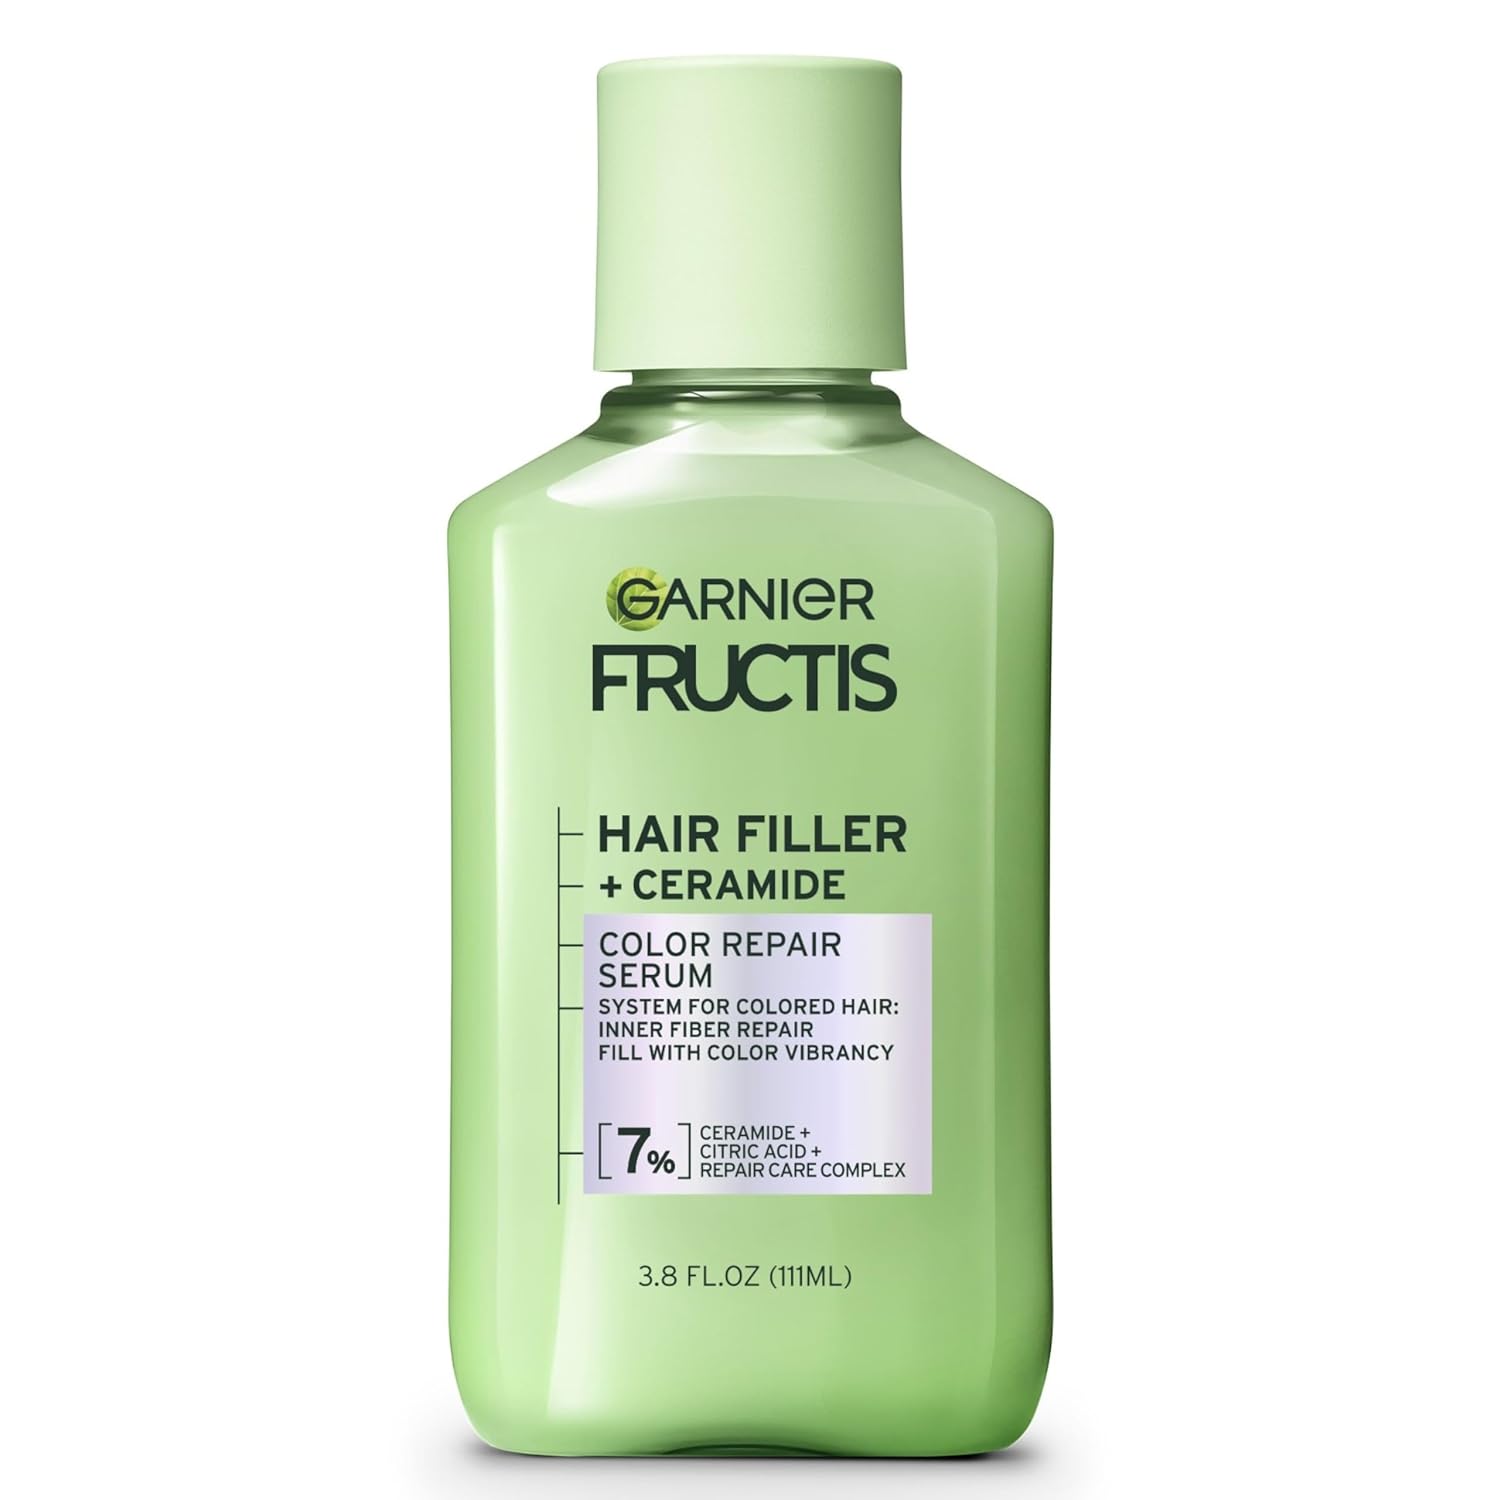 Garnier Fructis Hair Filler Color Repair Serum with Ceramide, 3.8 FL OZ, 1 Count